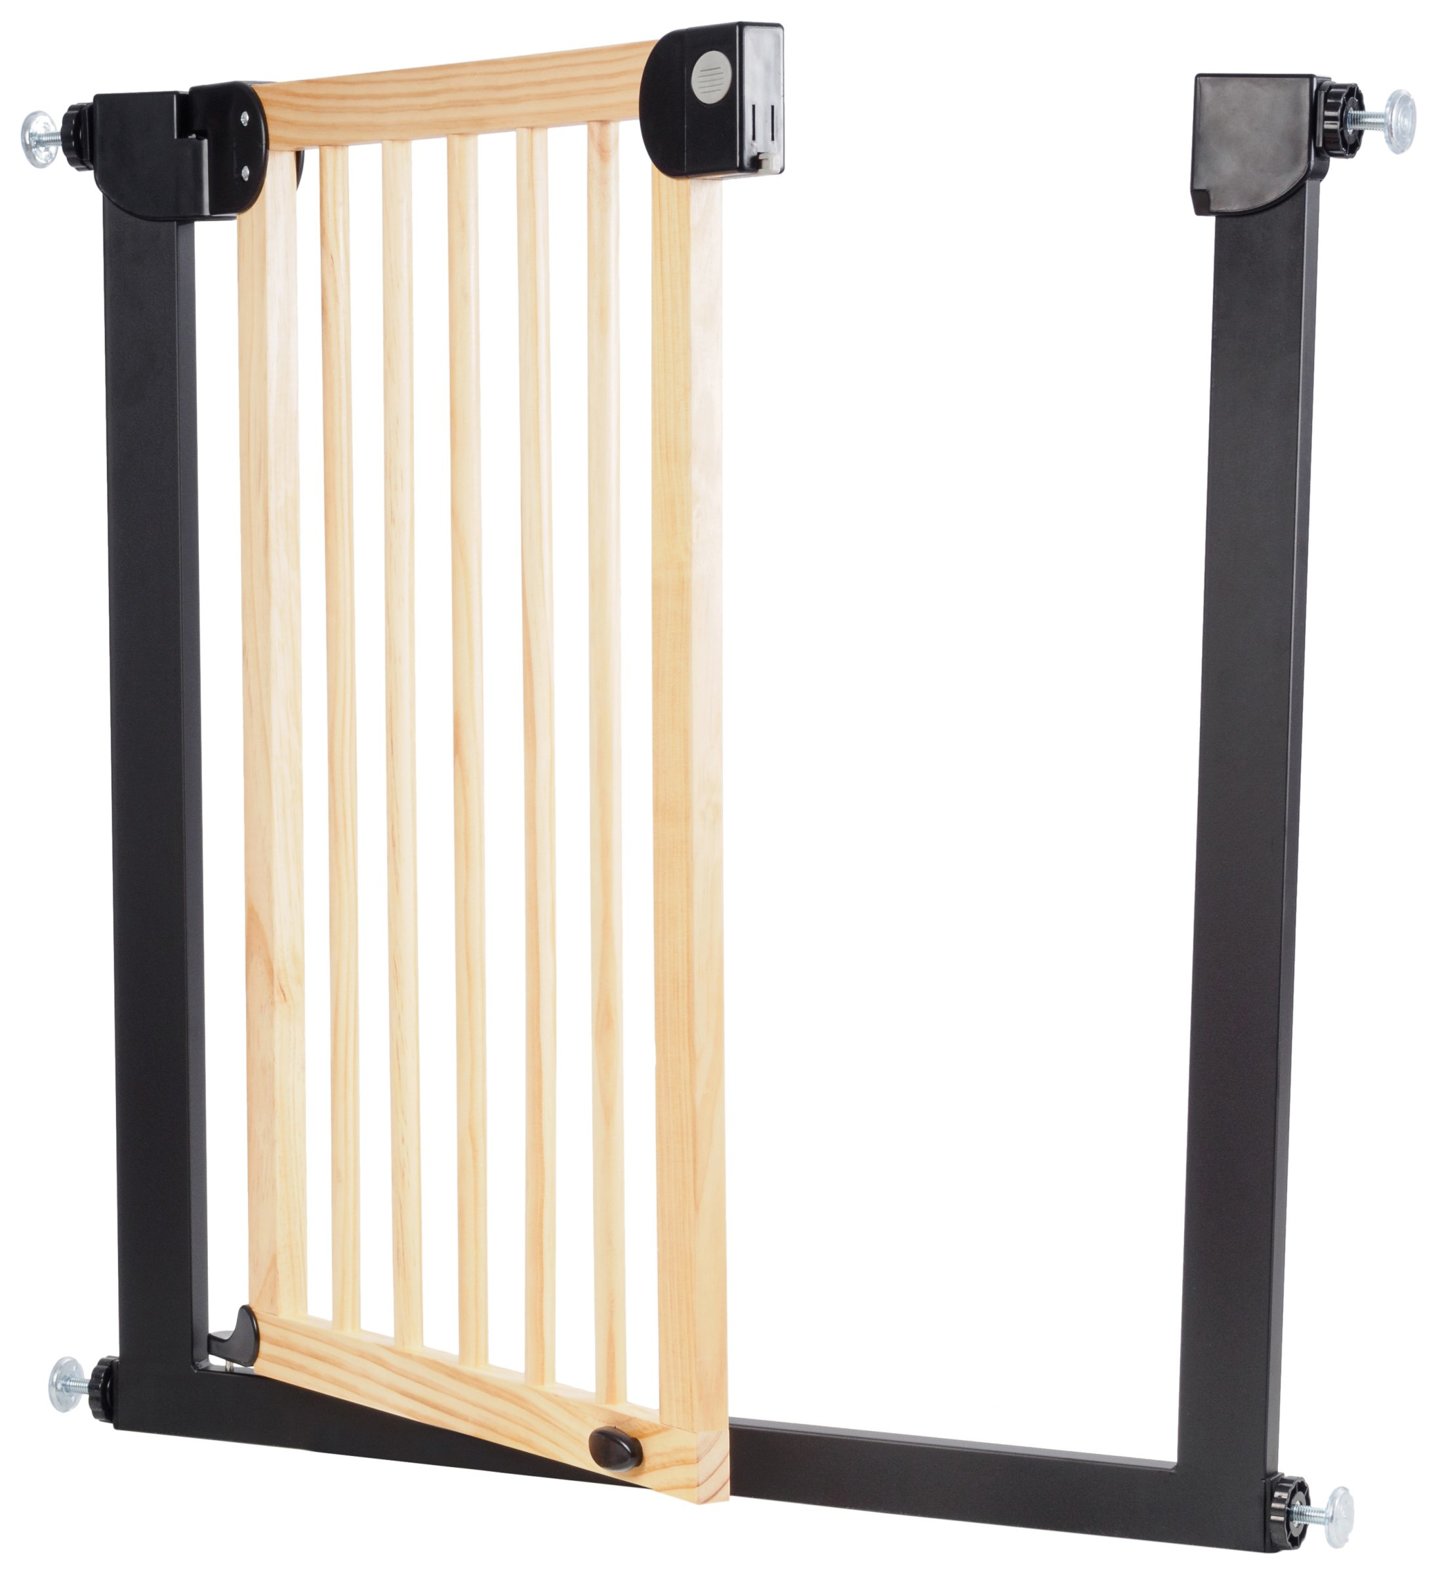 Drewniana bramka rozporowa do drzwi i schodów - barierka ochronna zabezpieczająca - szerokość 76...83cm